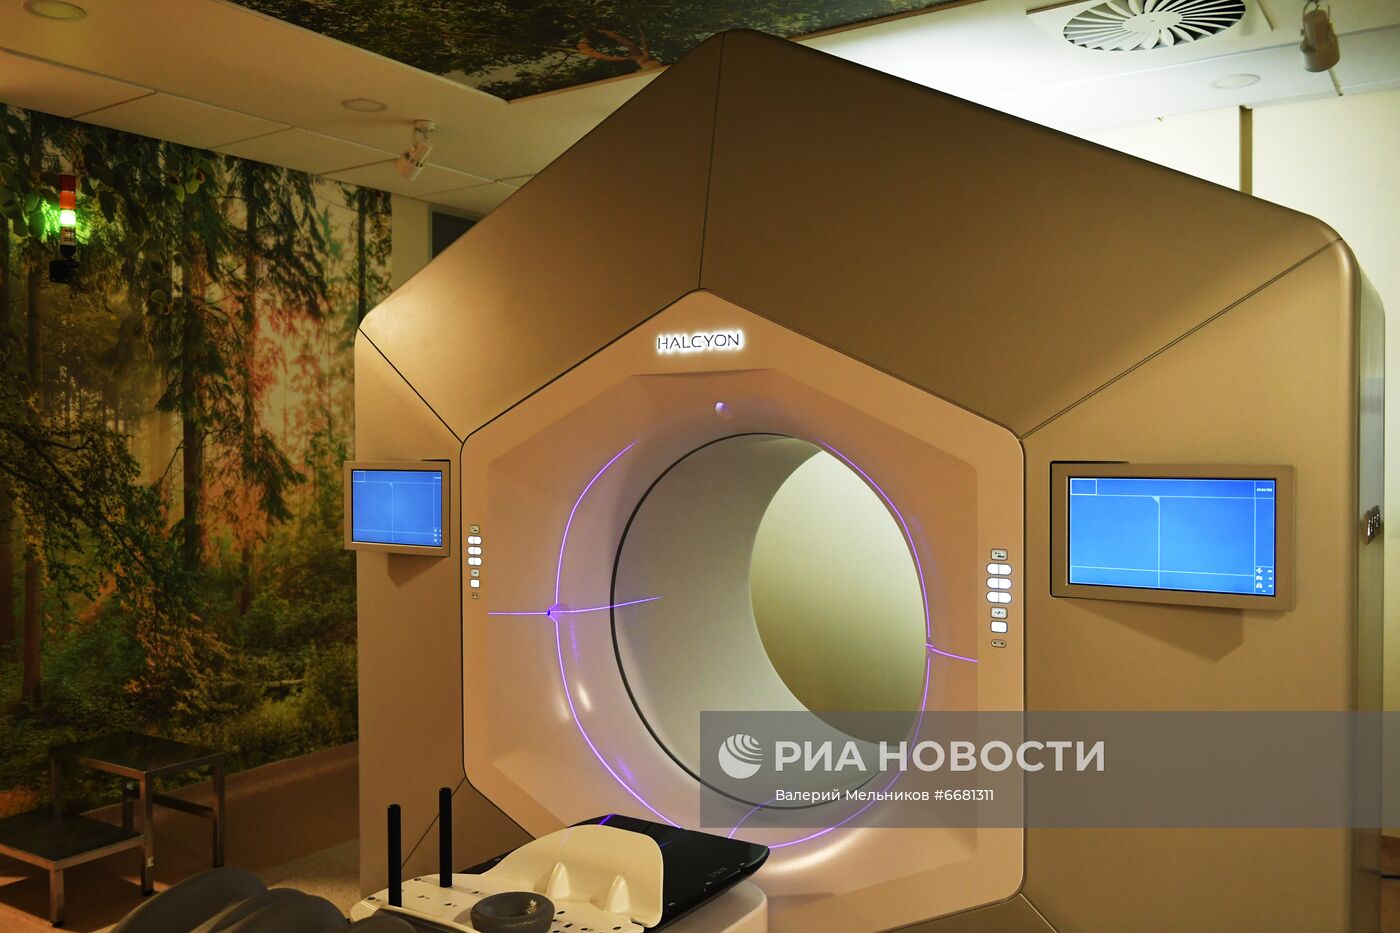 Открытие онкологического центра "Институт ядерной медицины"